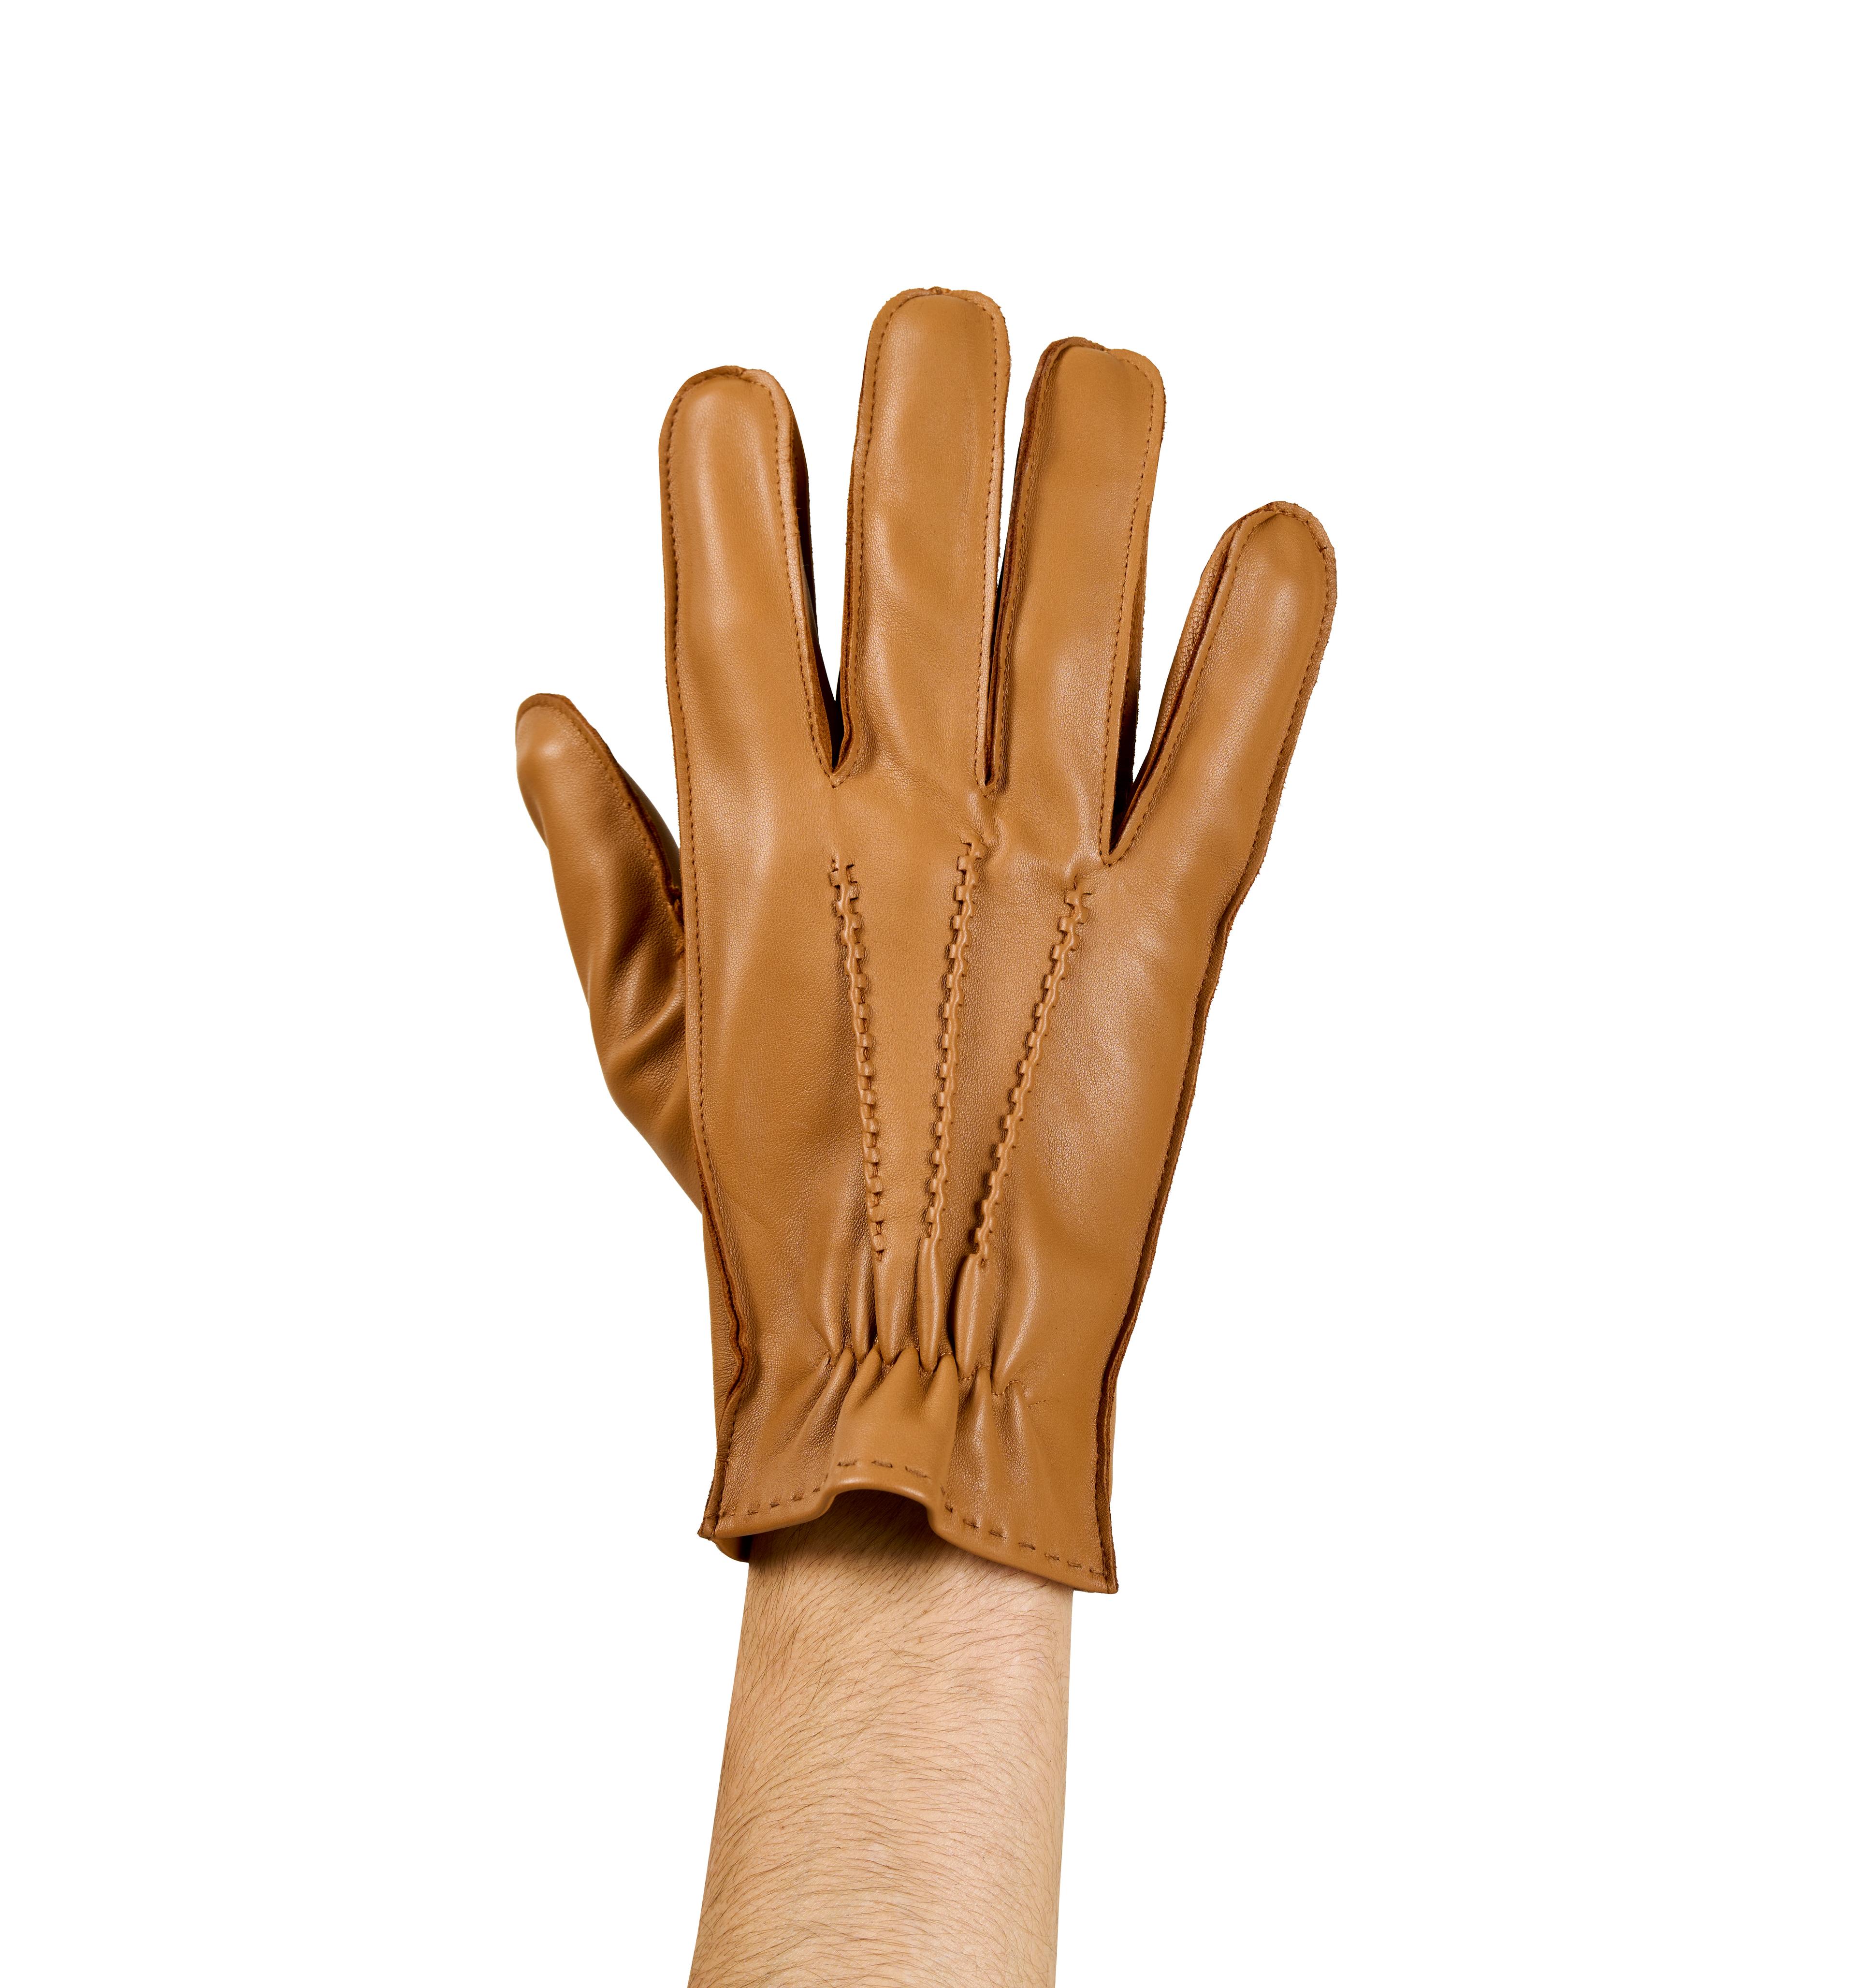 Boss Effect Leather Gloves for Men - Tan